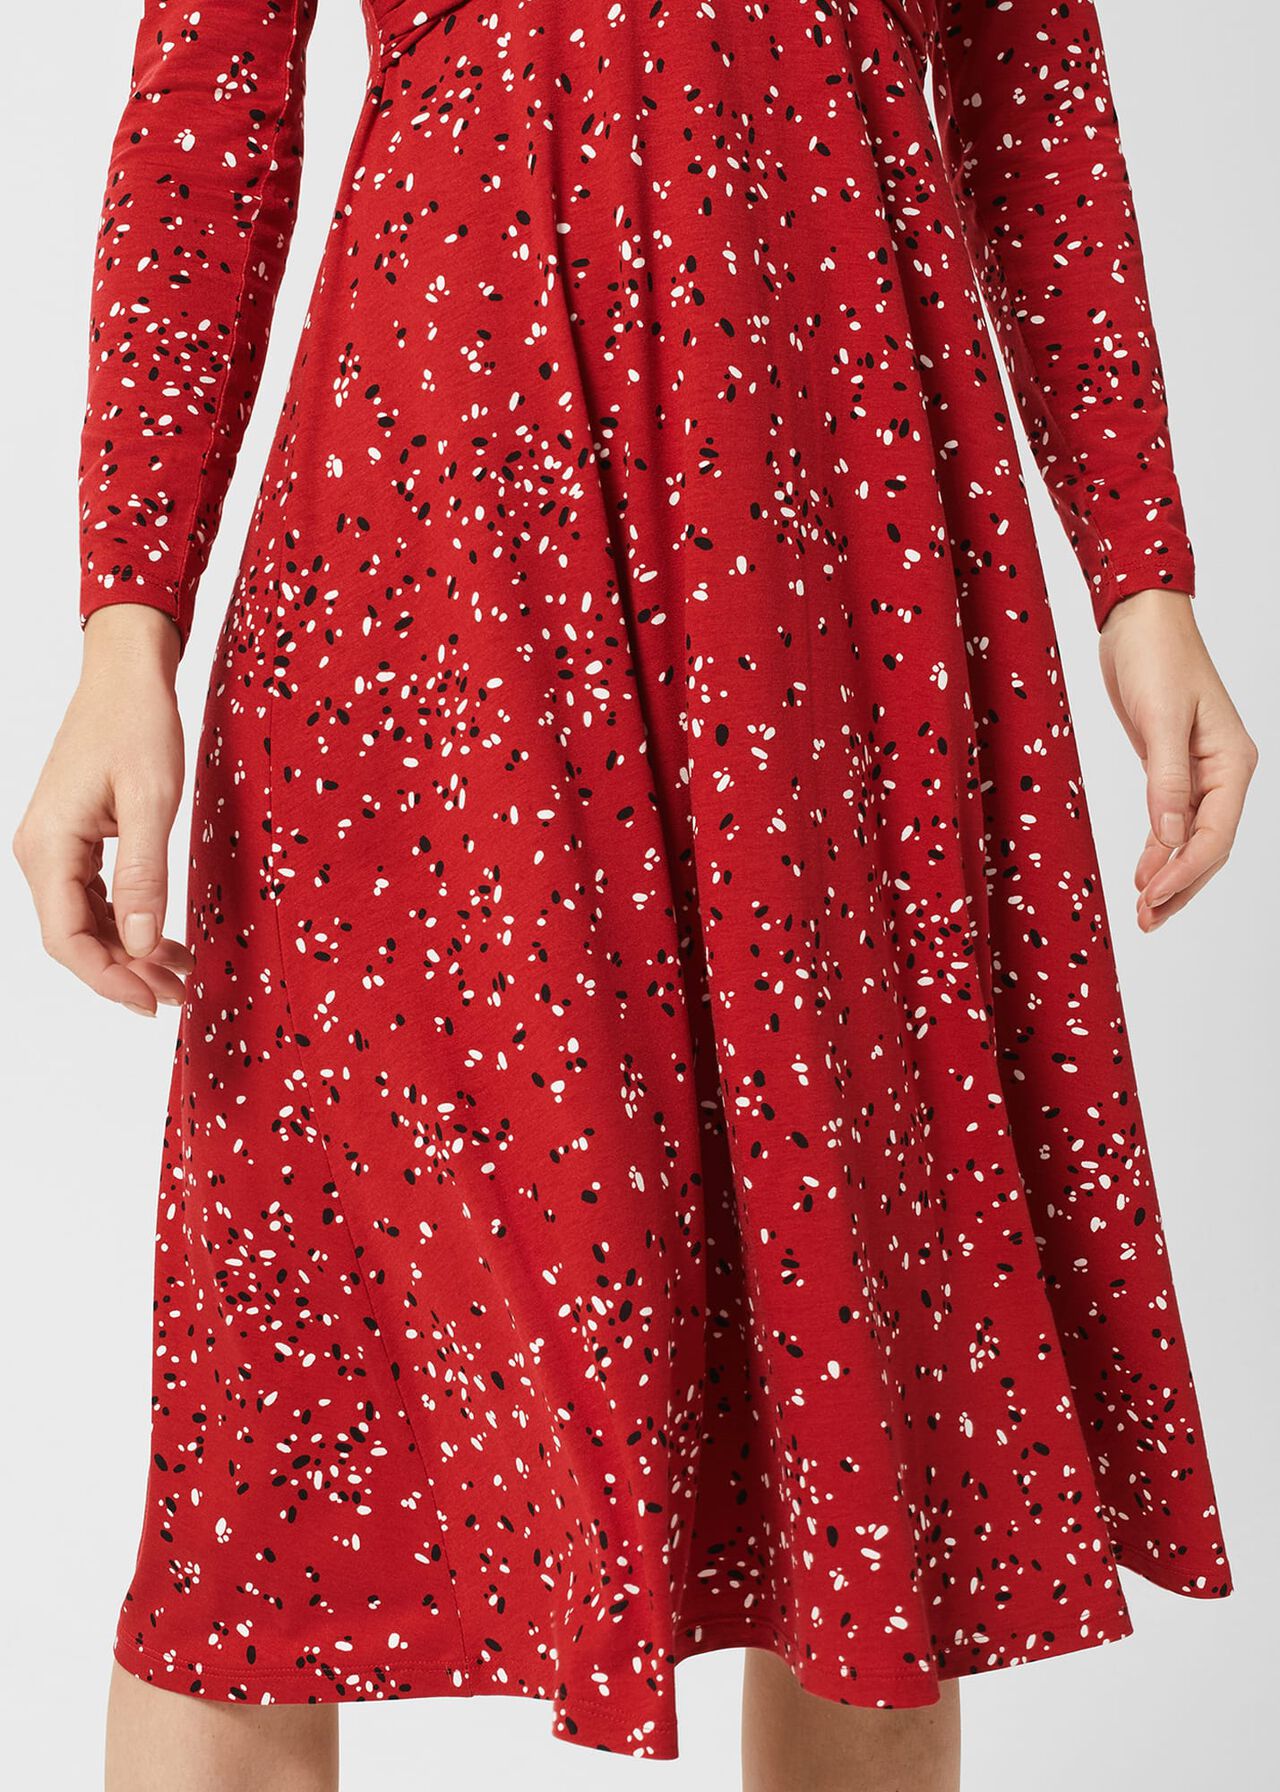 Anoushka Jersey Dress, Red Multi, hi-res